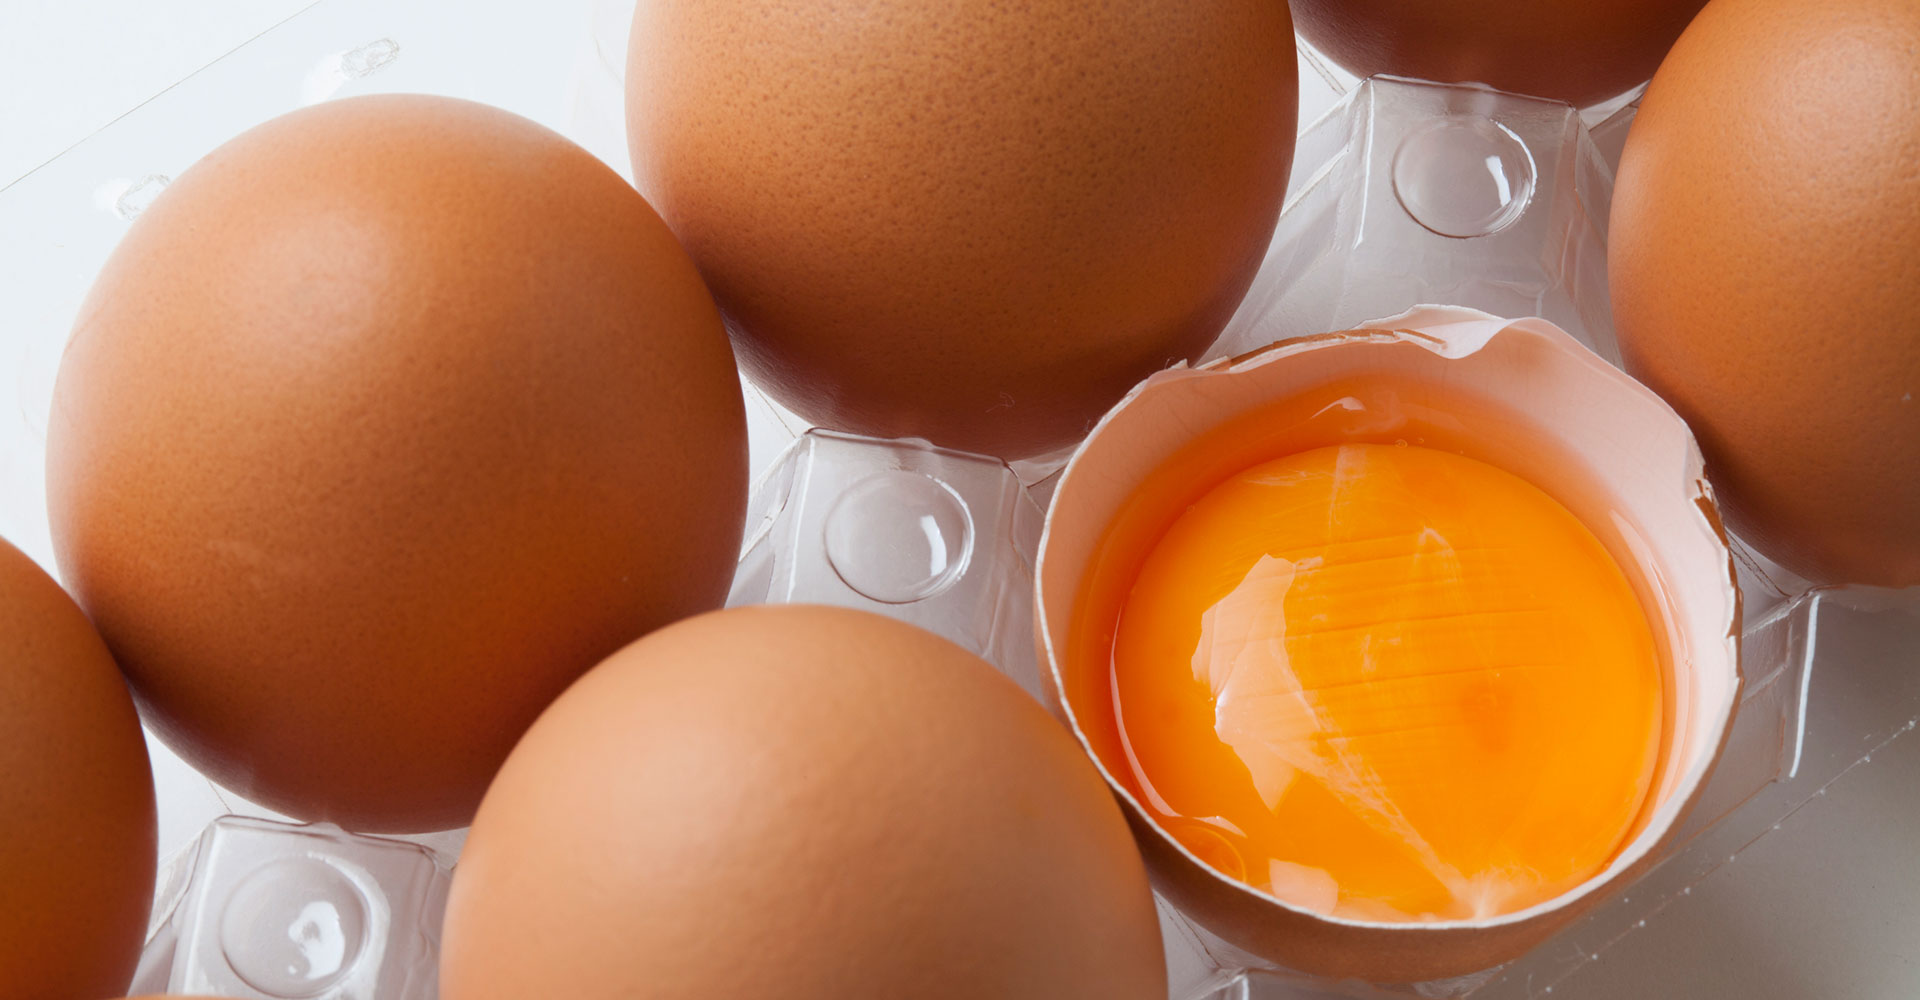 安全でおいしい卵製品を届けするために